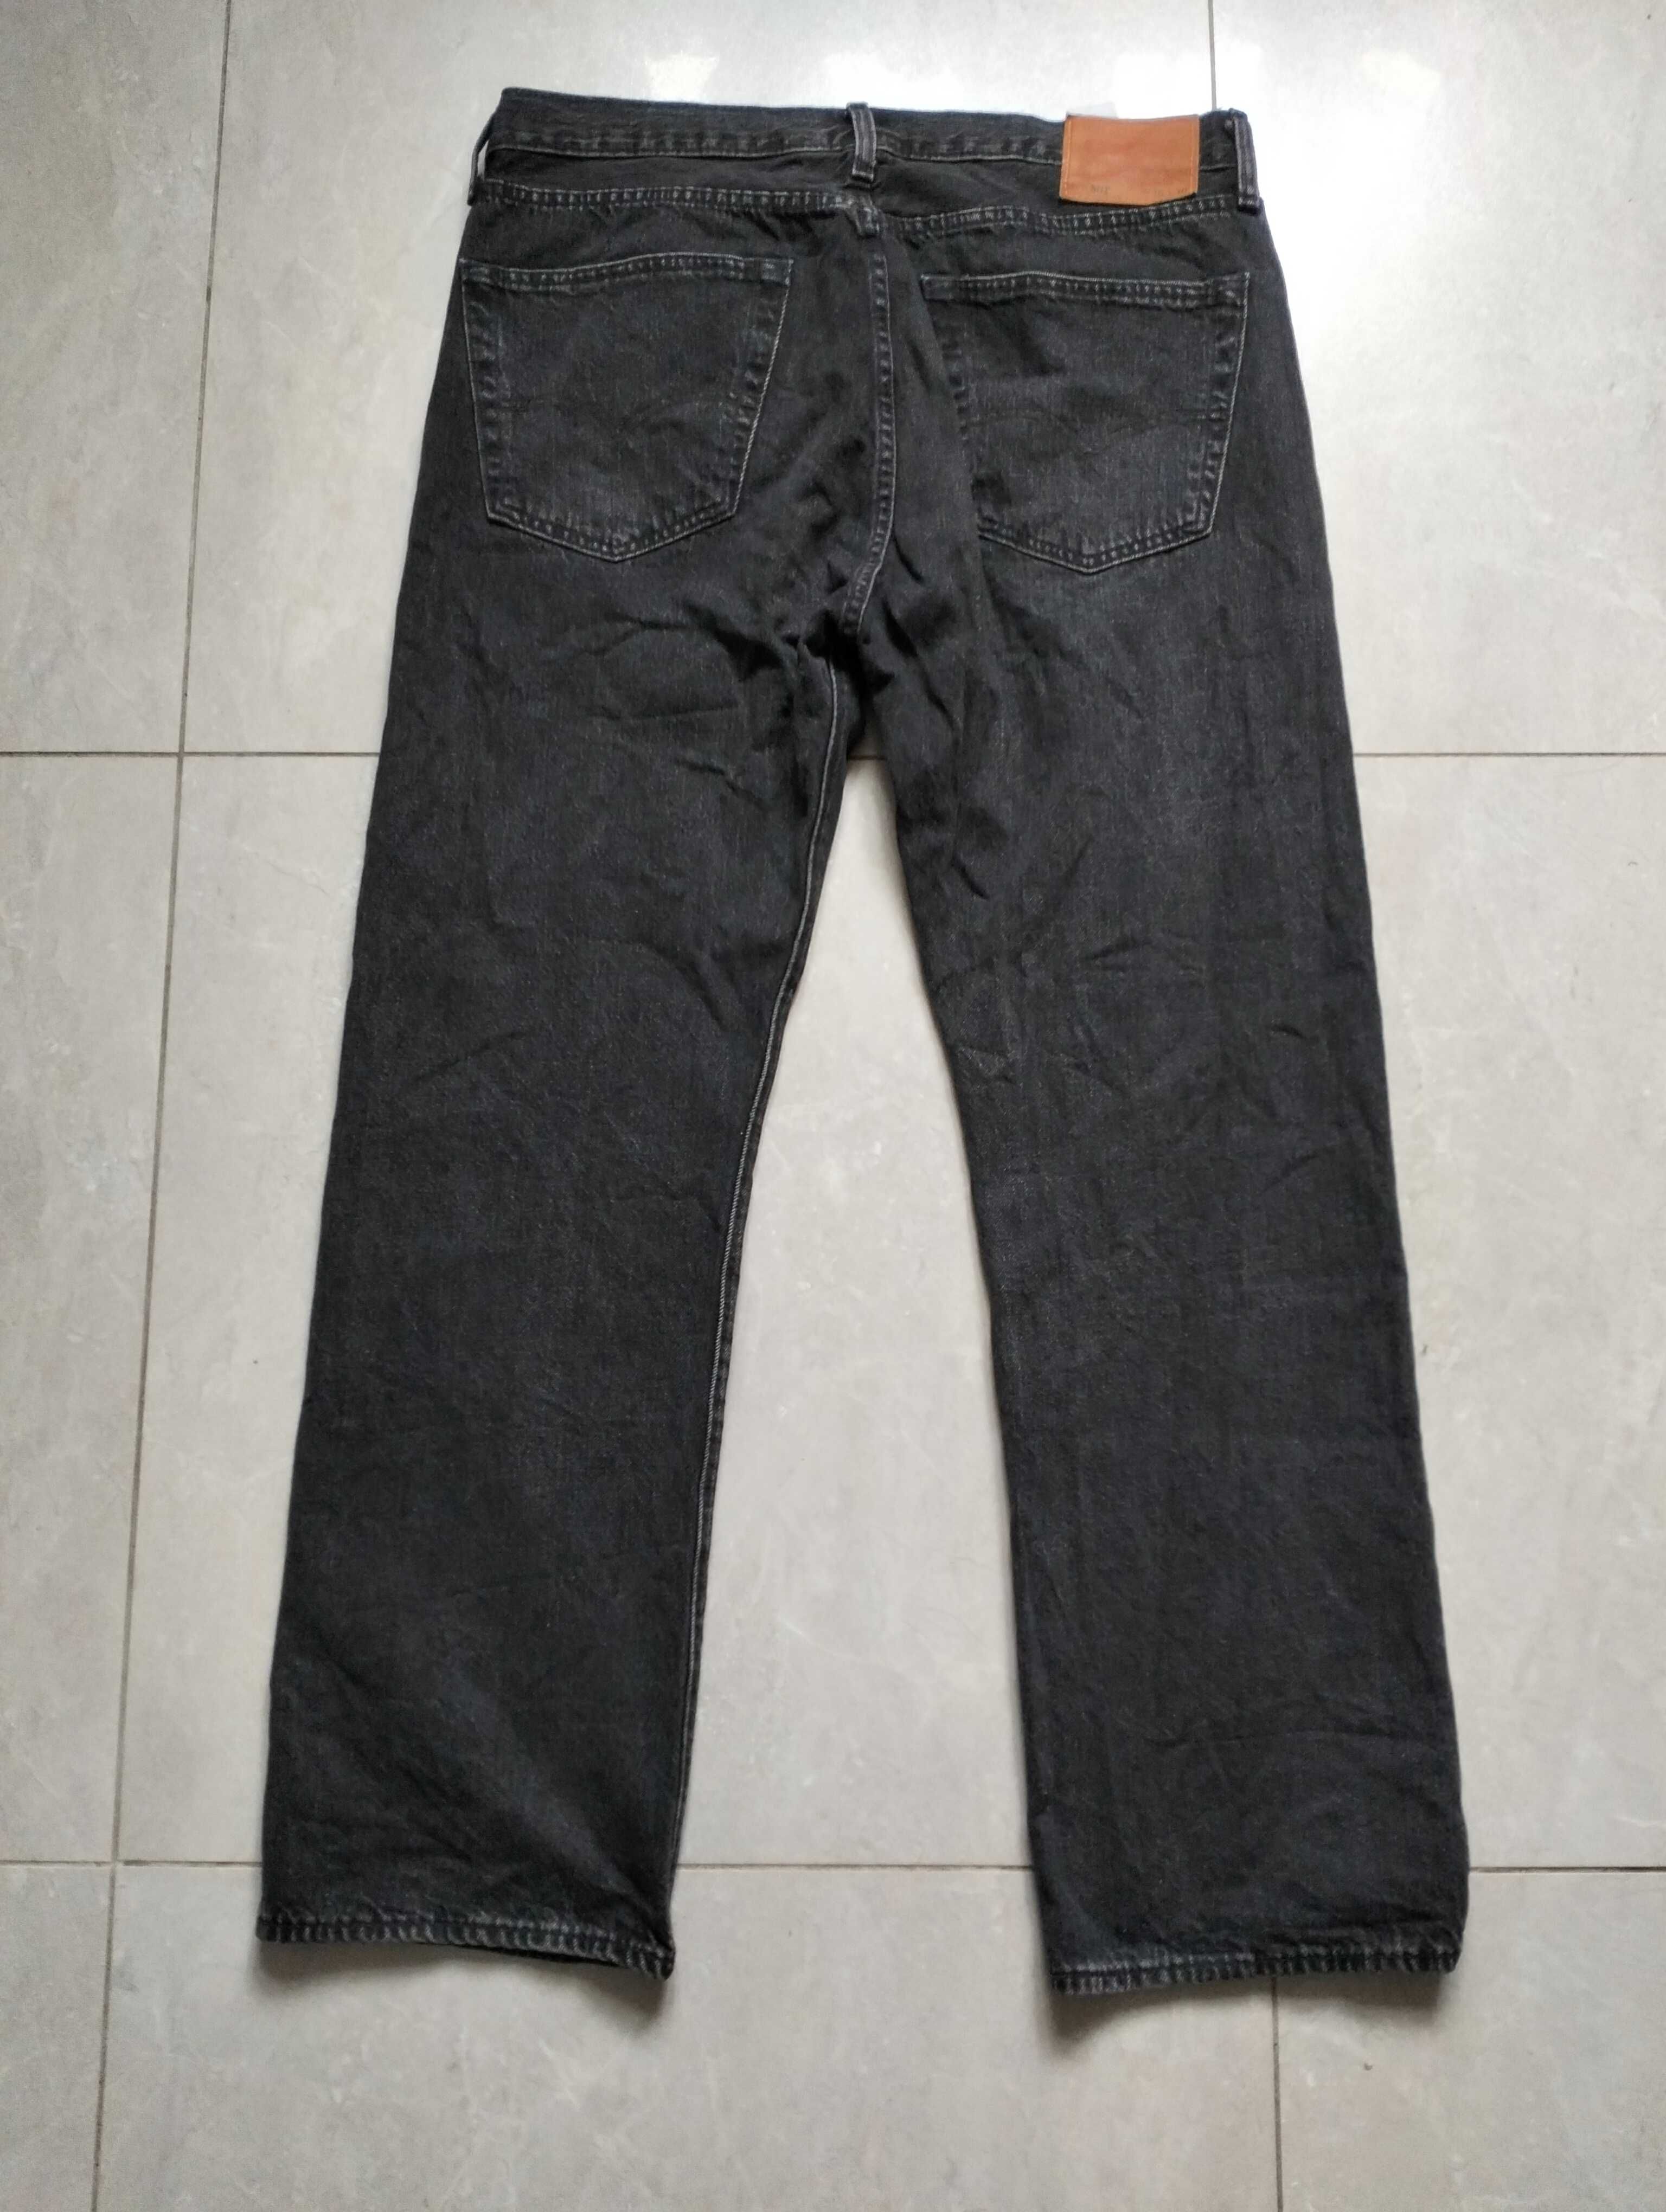 Levi's 501 Premium spodnie jeansy roz 36/30